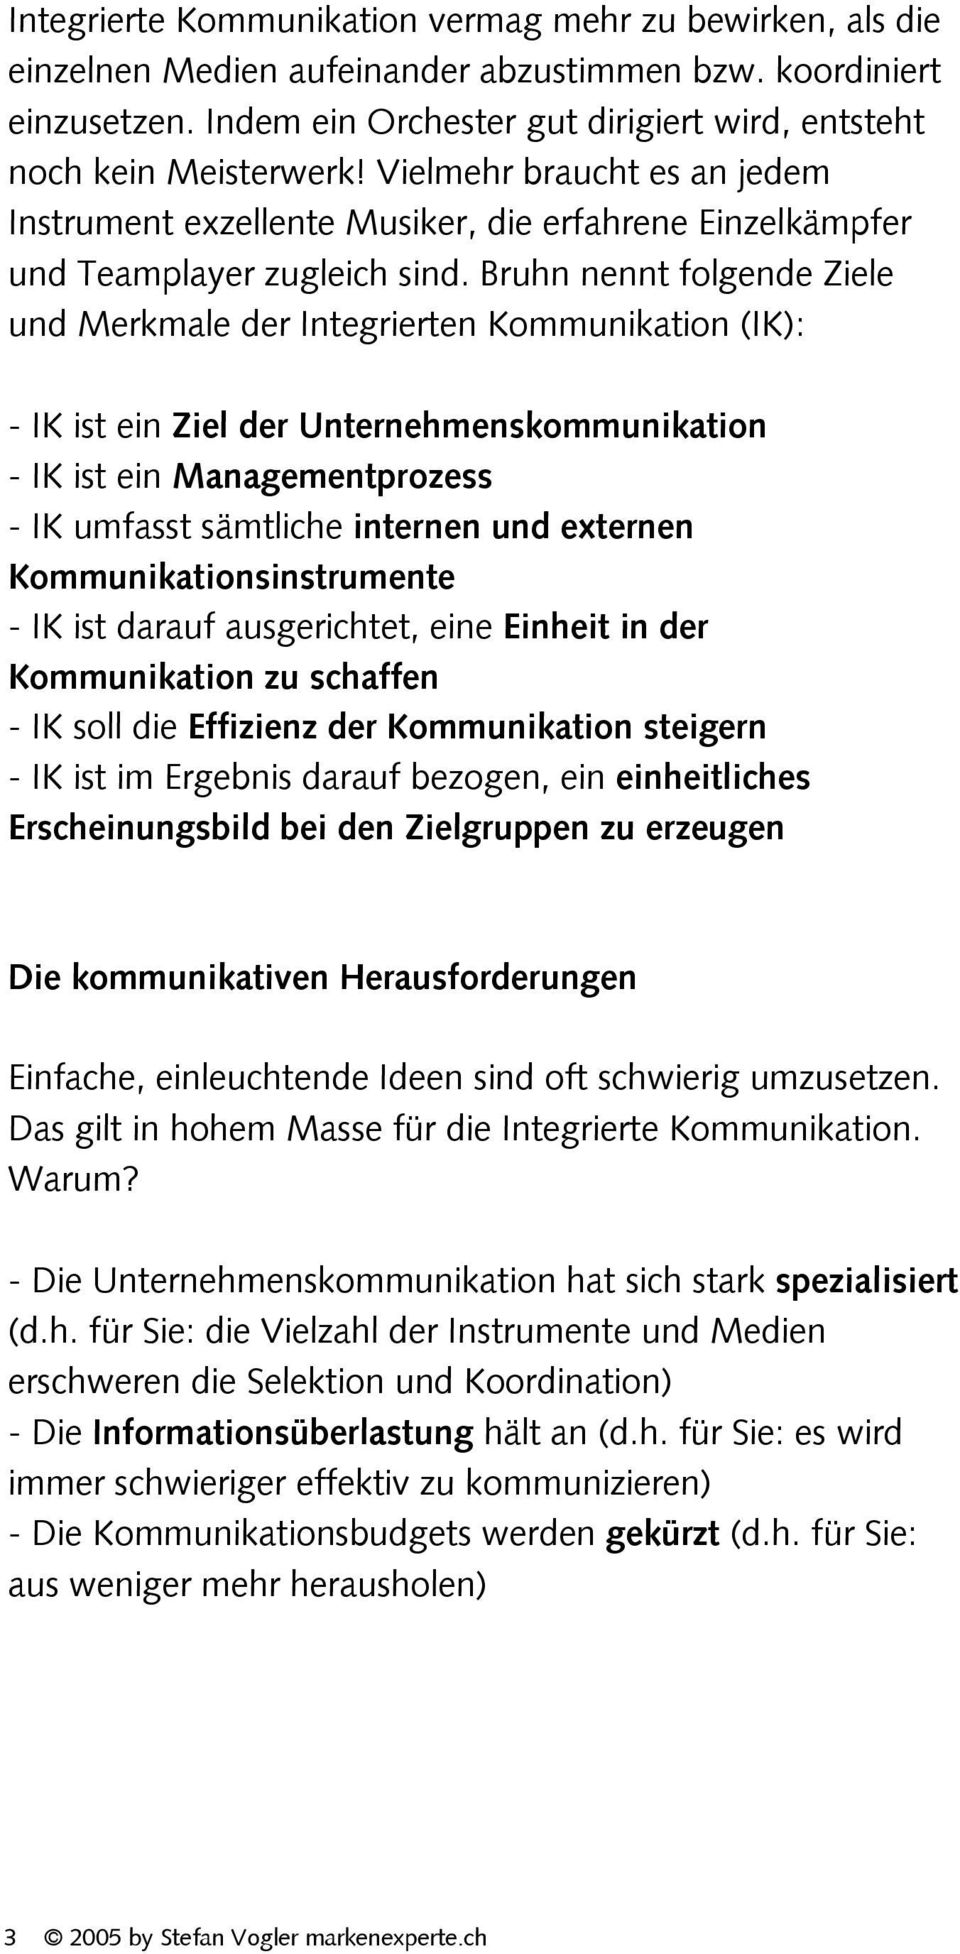 Bruhn nennt folgende Ziele und Merkmale der Integrierten Kommunikation (IK): - IK ist ein Ziel der Unternehmenskommunikation - IK ist ein Managementprozess - IK umfasst sämtliche internen und